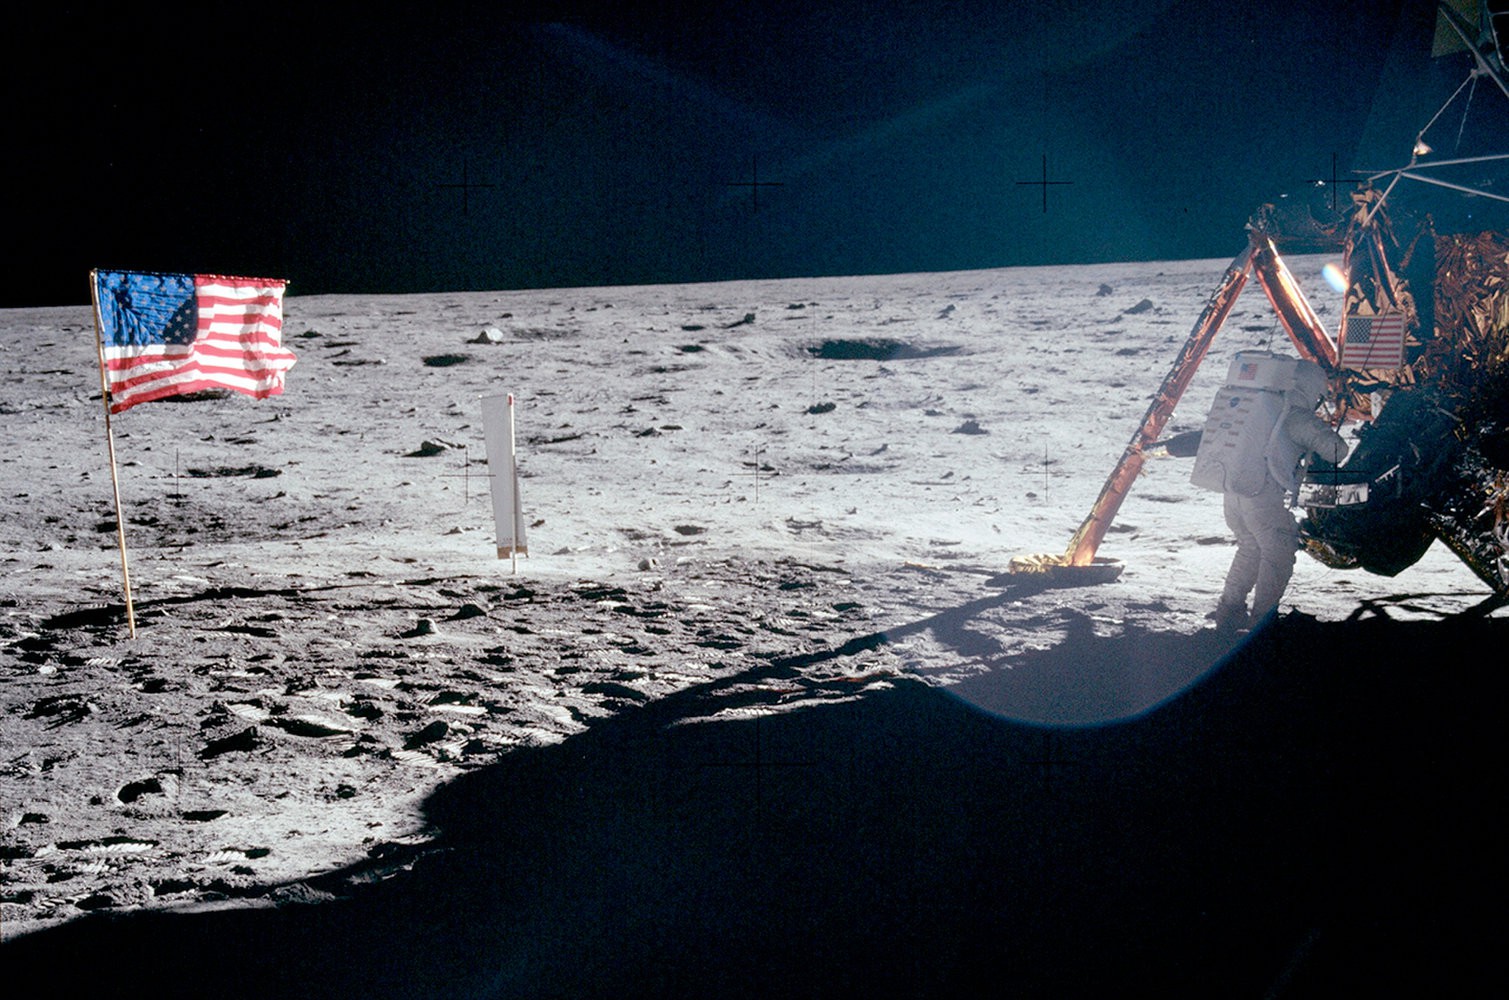 Neil Armstrong vứt phân trên mặt trăng và những chuyện chưa kể - Ảnh 6.